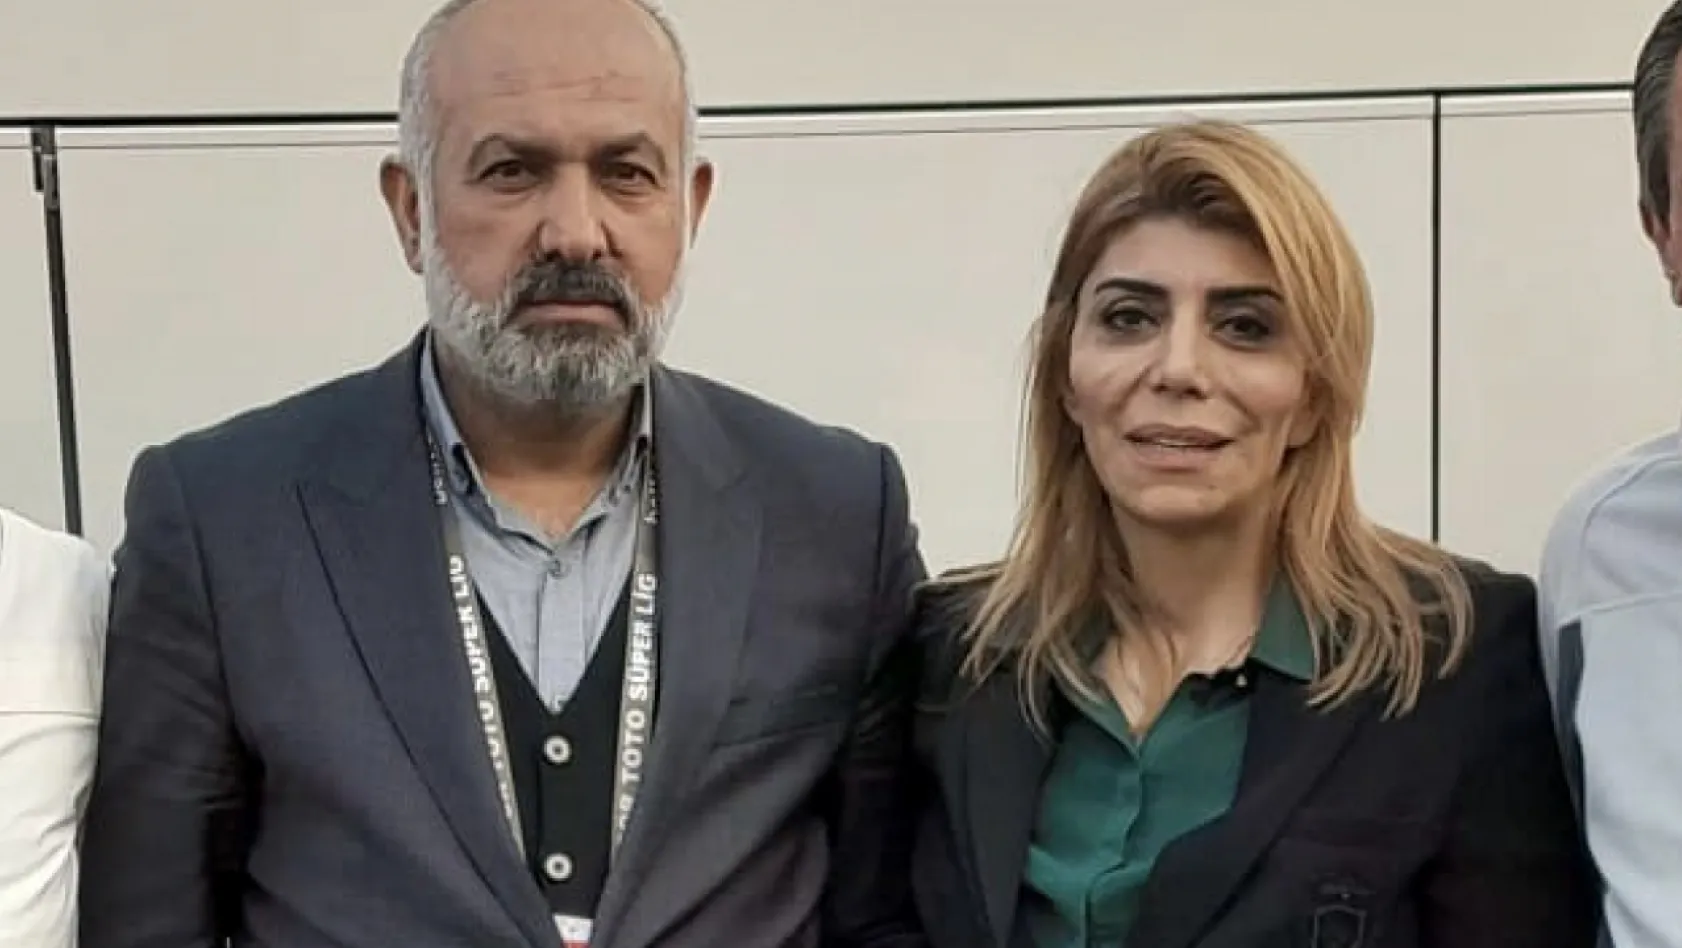 Ali Çamlı: 'Berna başkan Kayserispor'dan kopamaz'